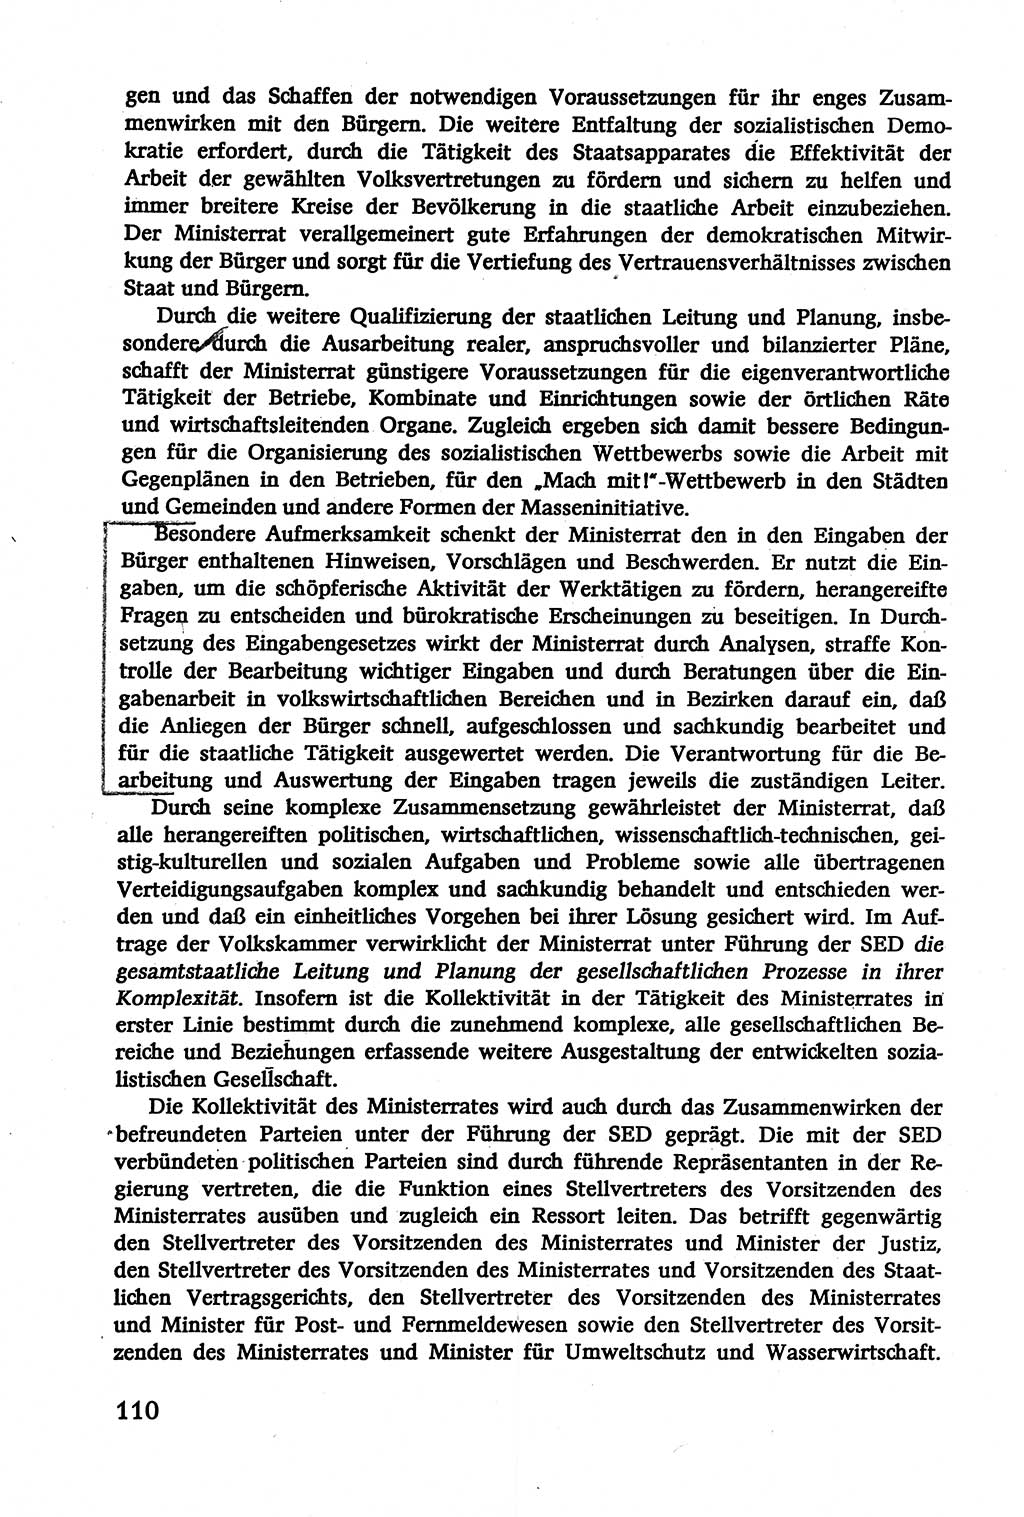 Verwaltungsrecht [Deutsche Demokratische Republik (DDR)], Lehrbuch 1979, Seite 110 (Verw.-R. DDR Lb. 1979, S. 110)